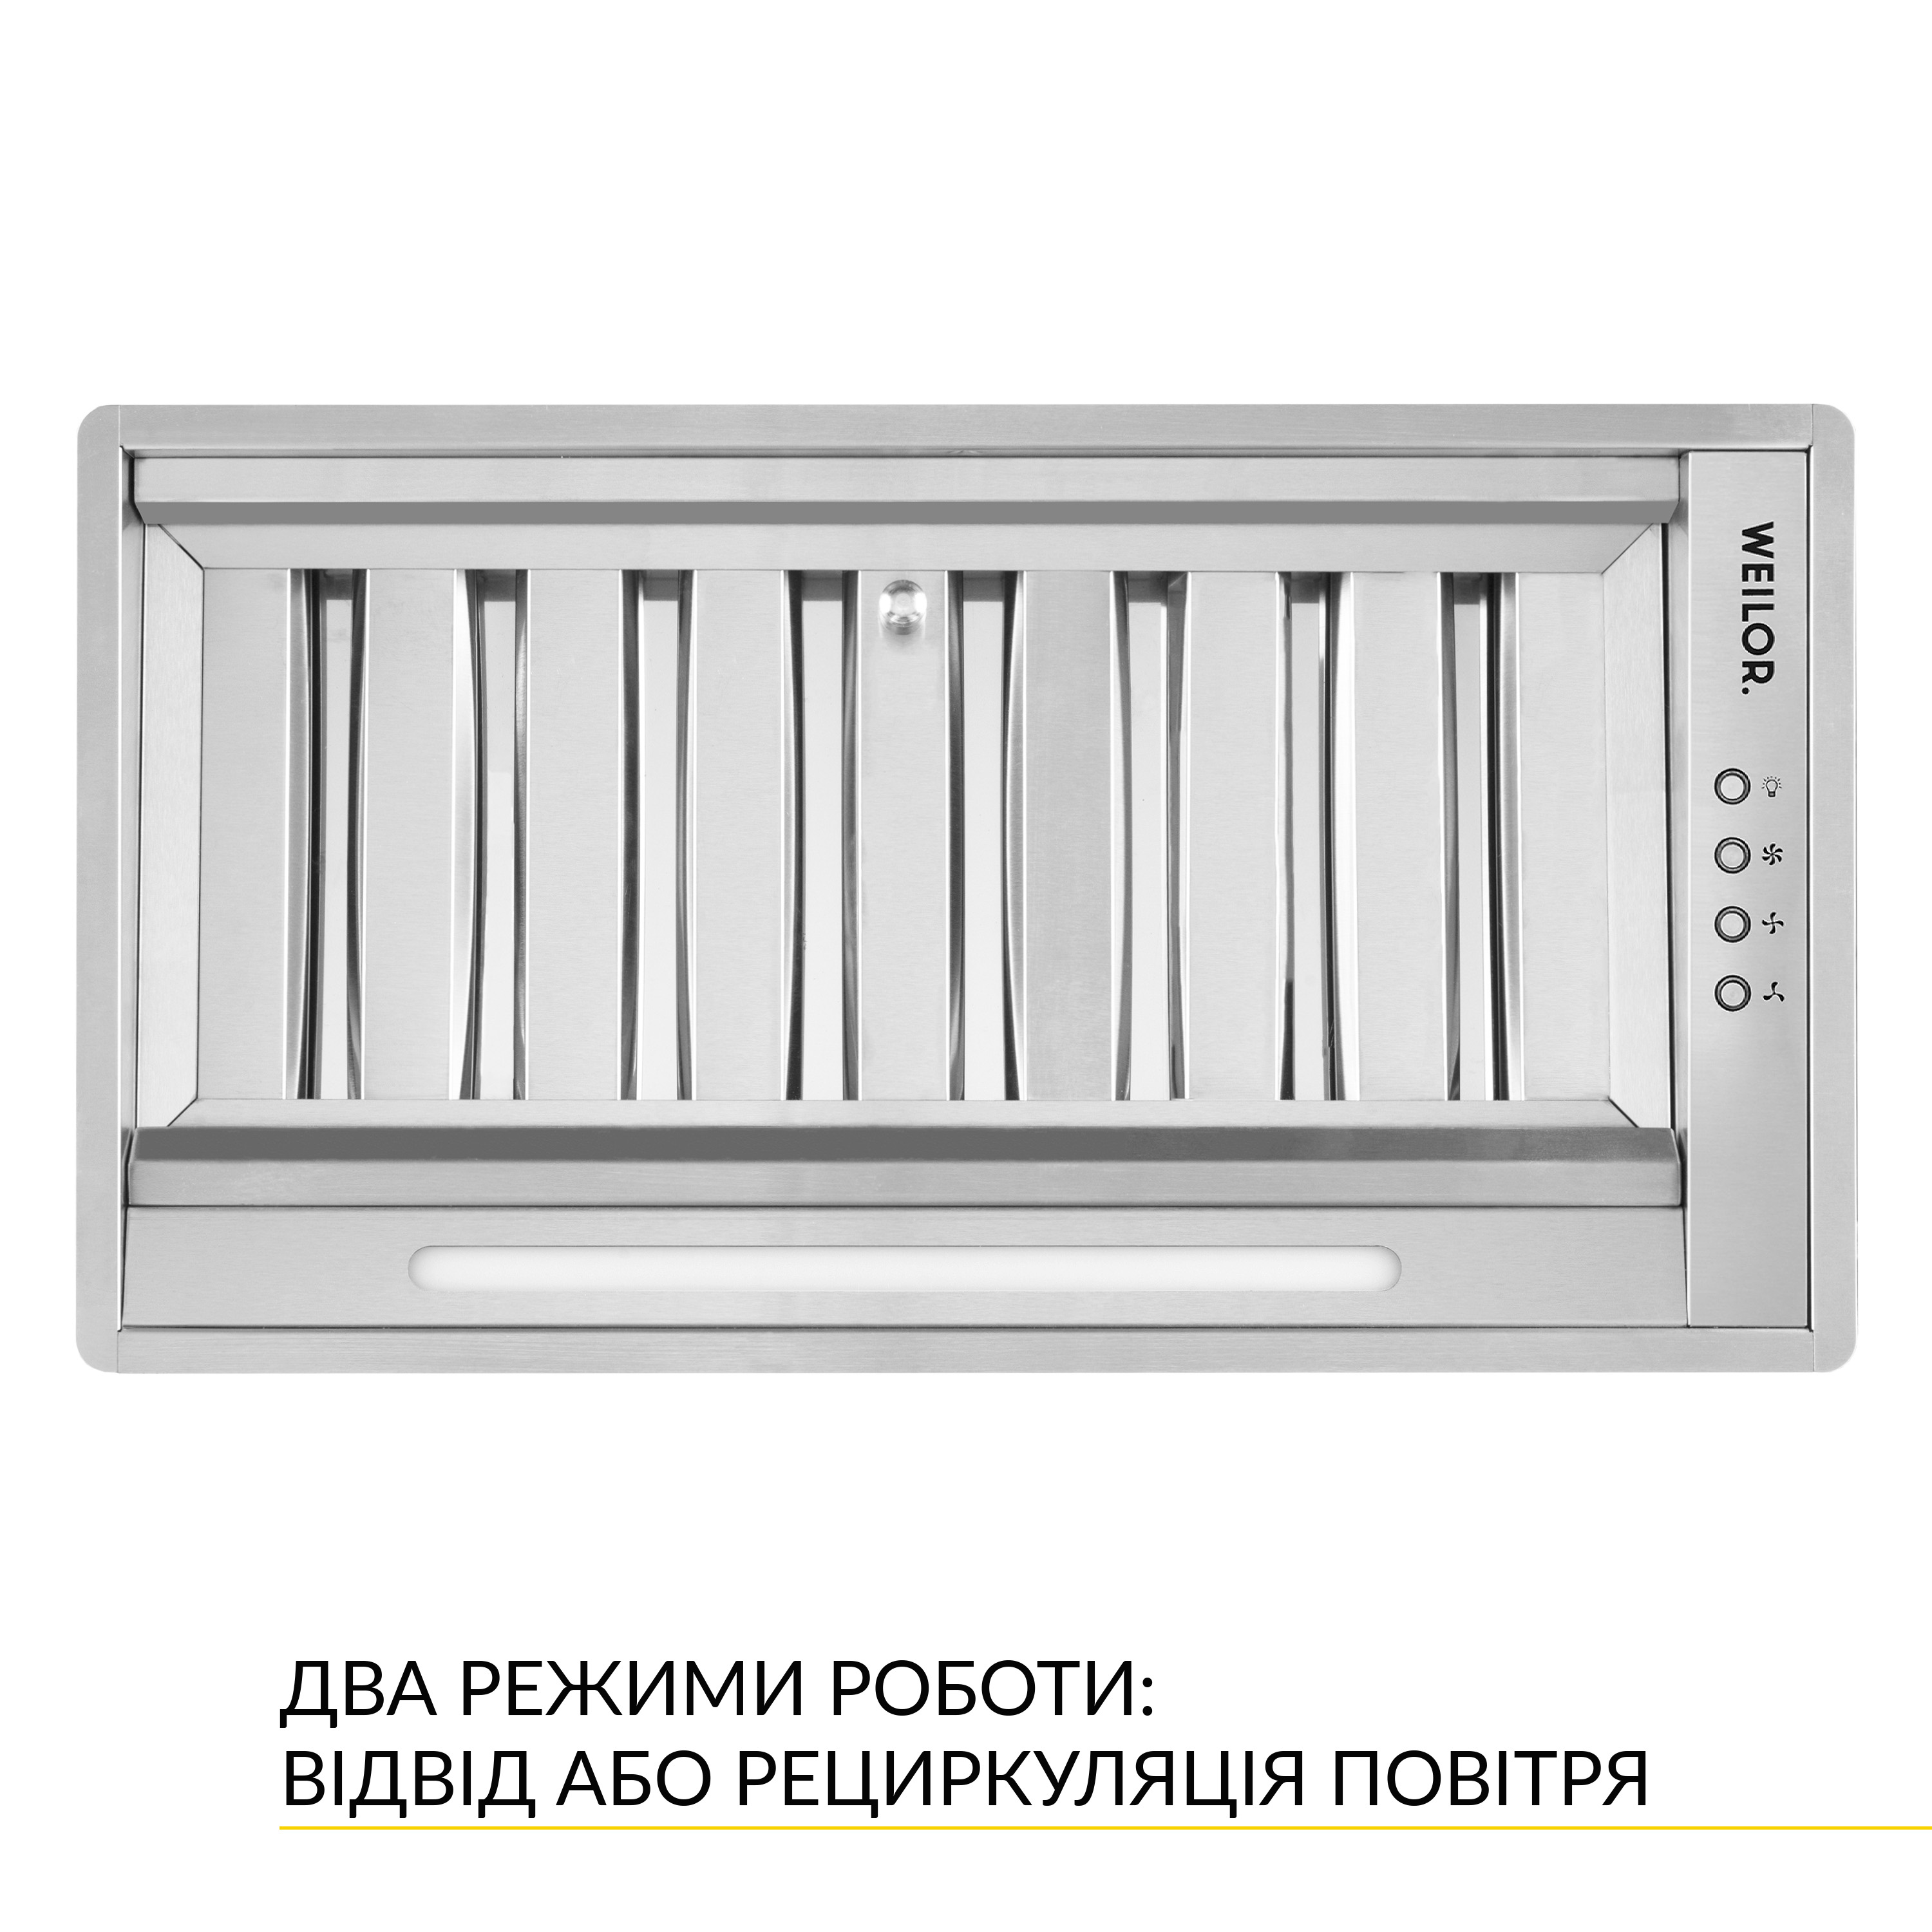 Кухонная вытяжка Weilor PPE 5265 SS 1250 LED Strip отзывы - изображения 5